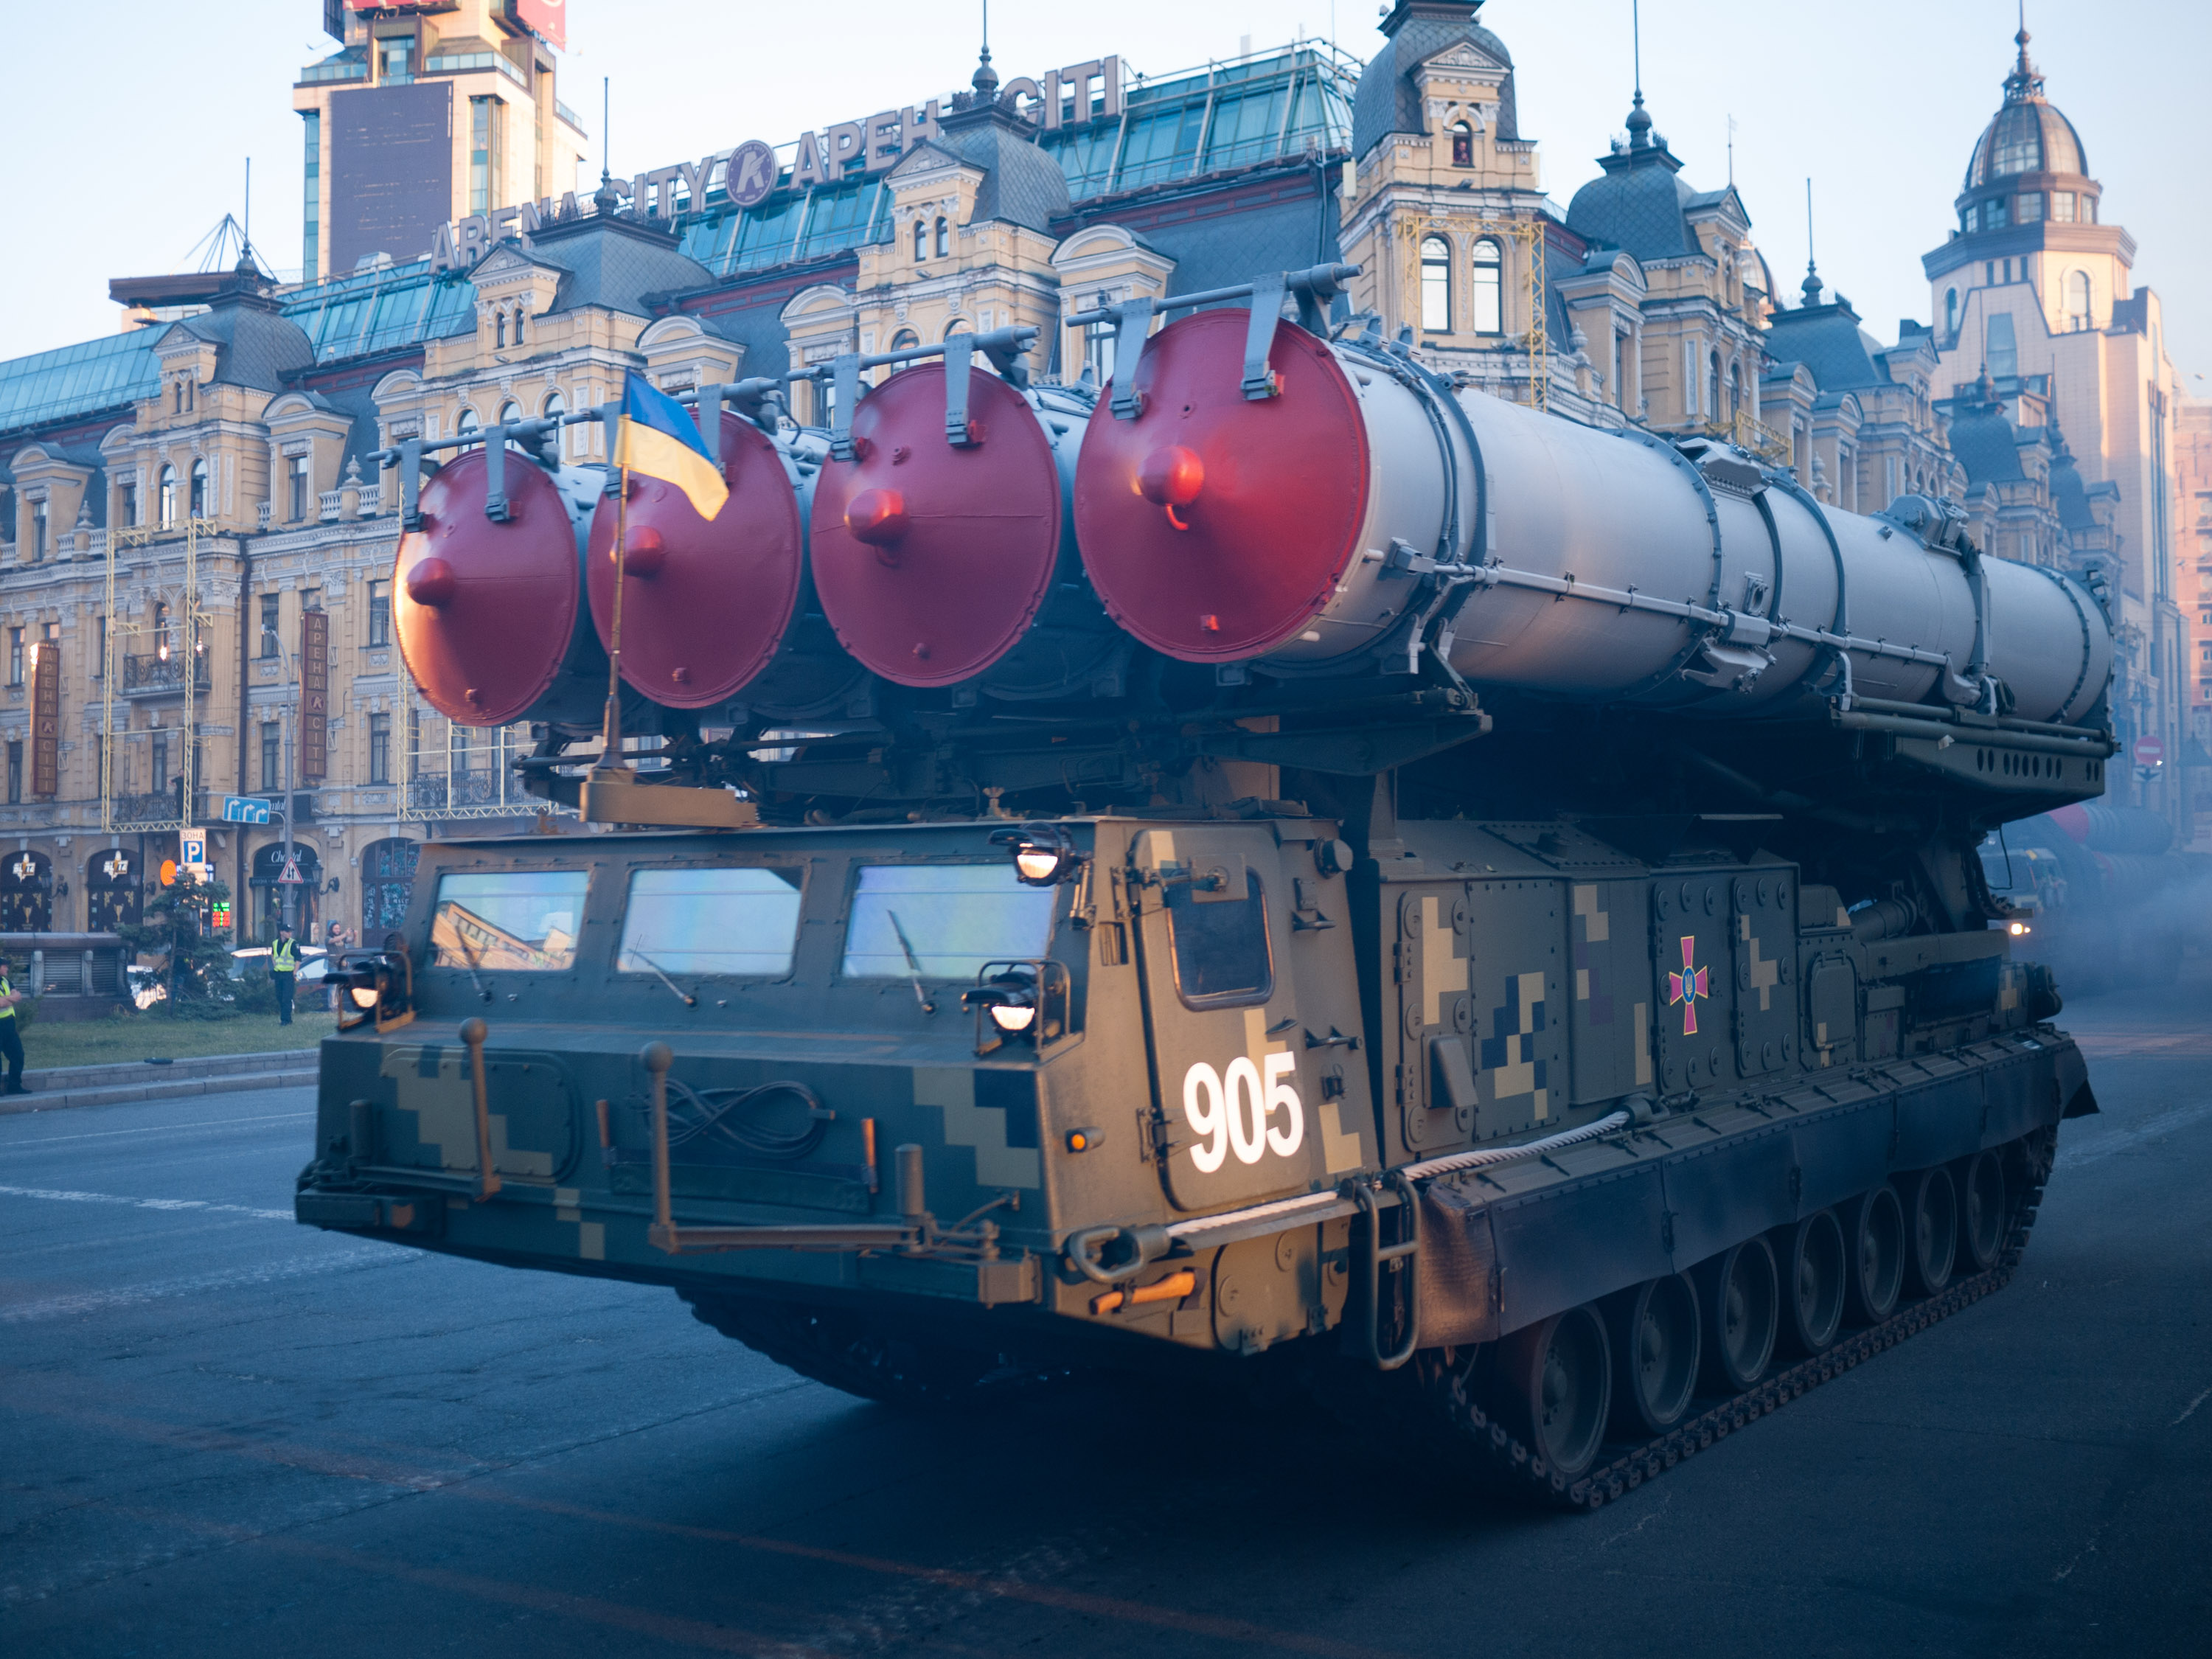 ВСУ показали редкое видео боевой работы ЗРК С-300В1 – это единственный зенитно-ракетный комплекс в Украине, который может сбивать баллистические ракеты